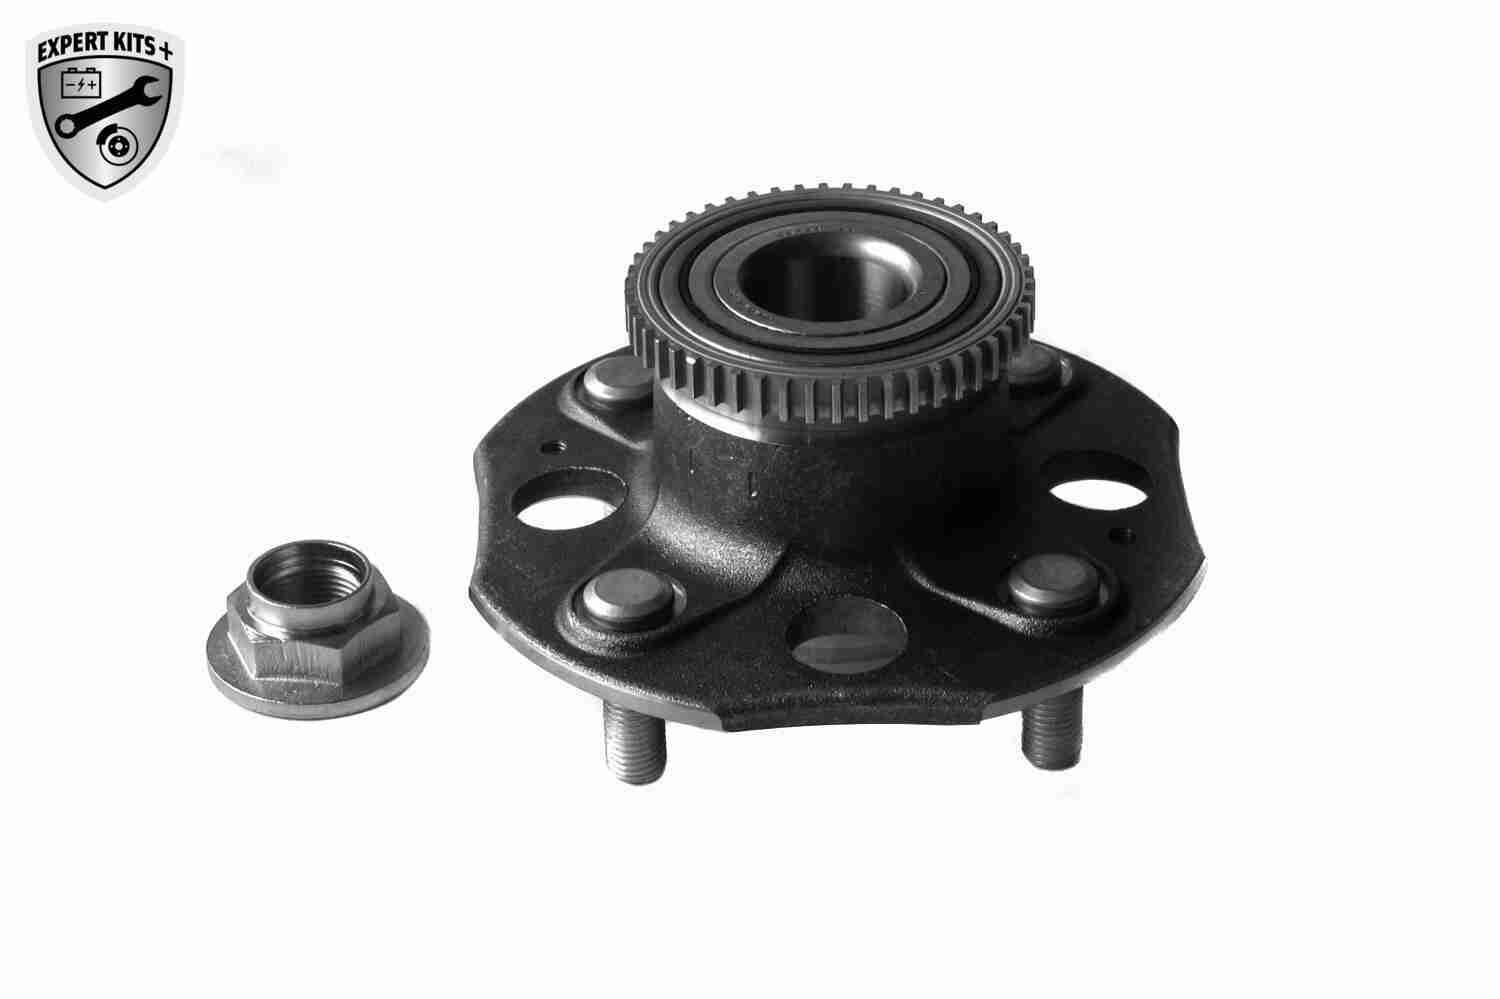 VAICO Rear Axle, EXPERT KITS +, 152 mm Wheel hub bearing V26-0066 buy